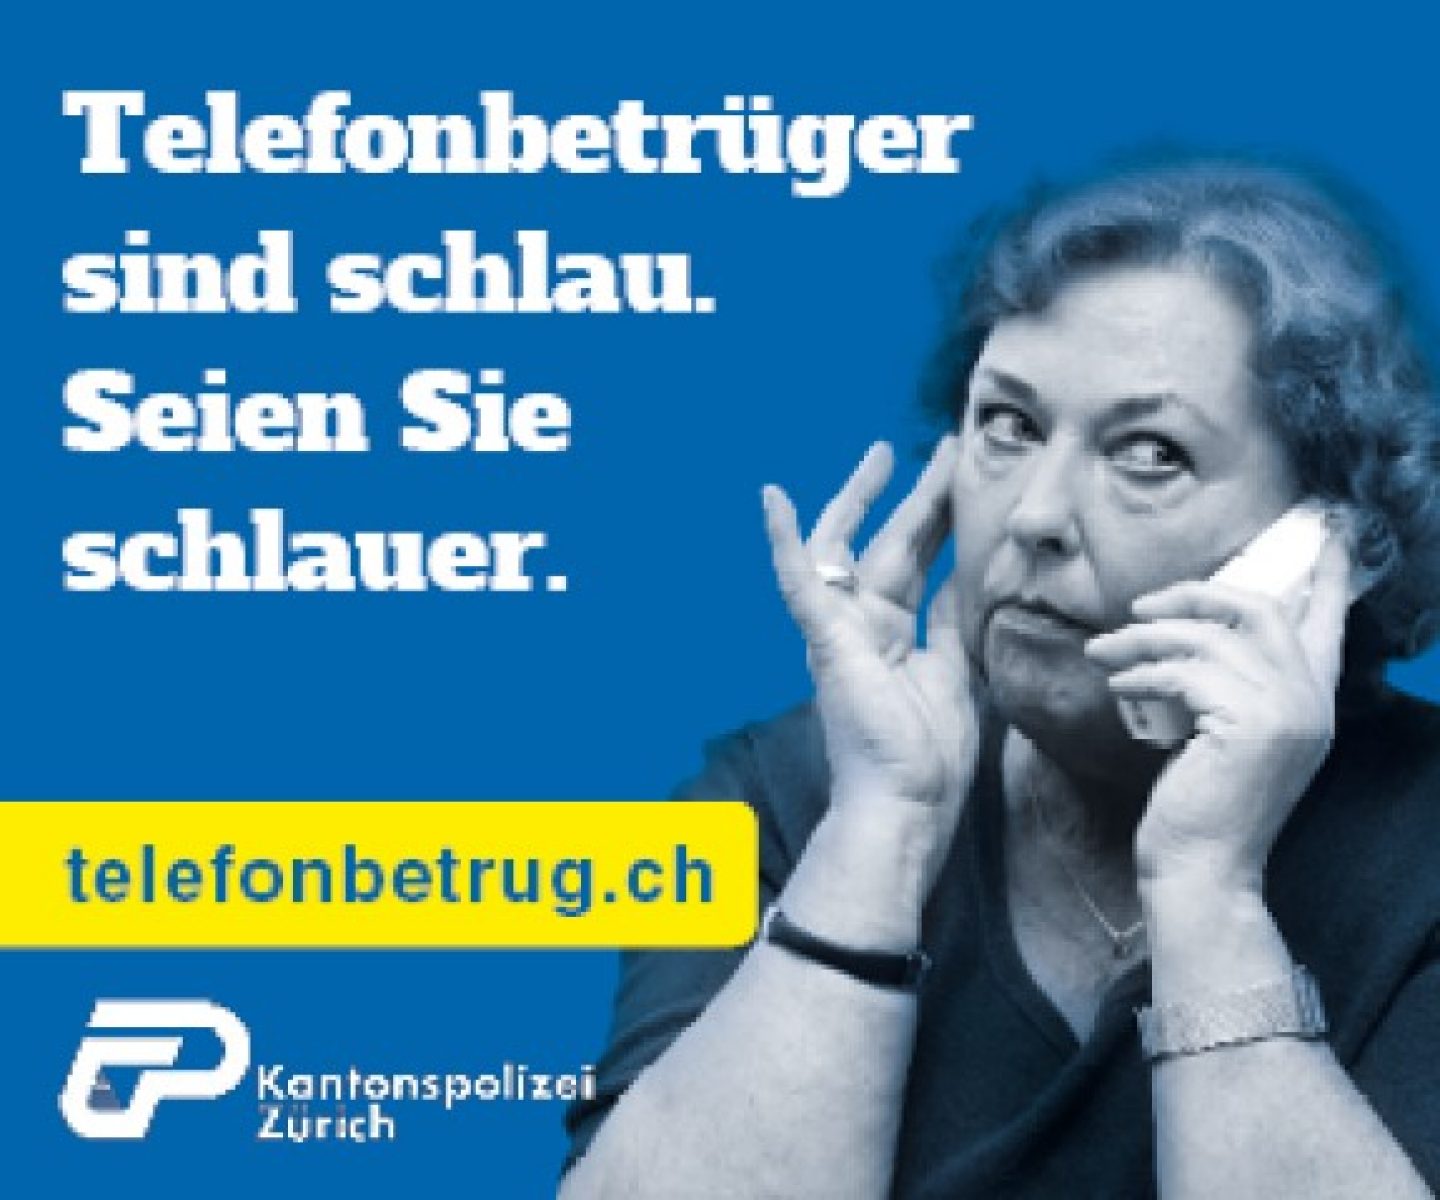 Telefonbetrug-Frau